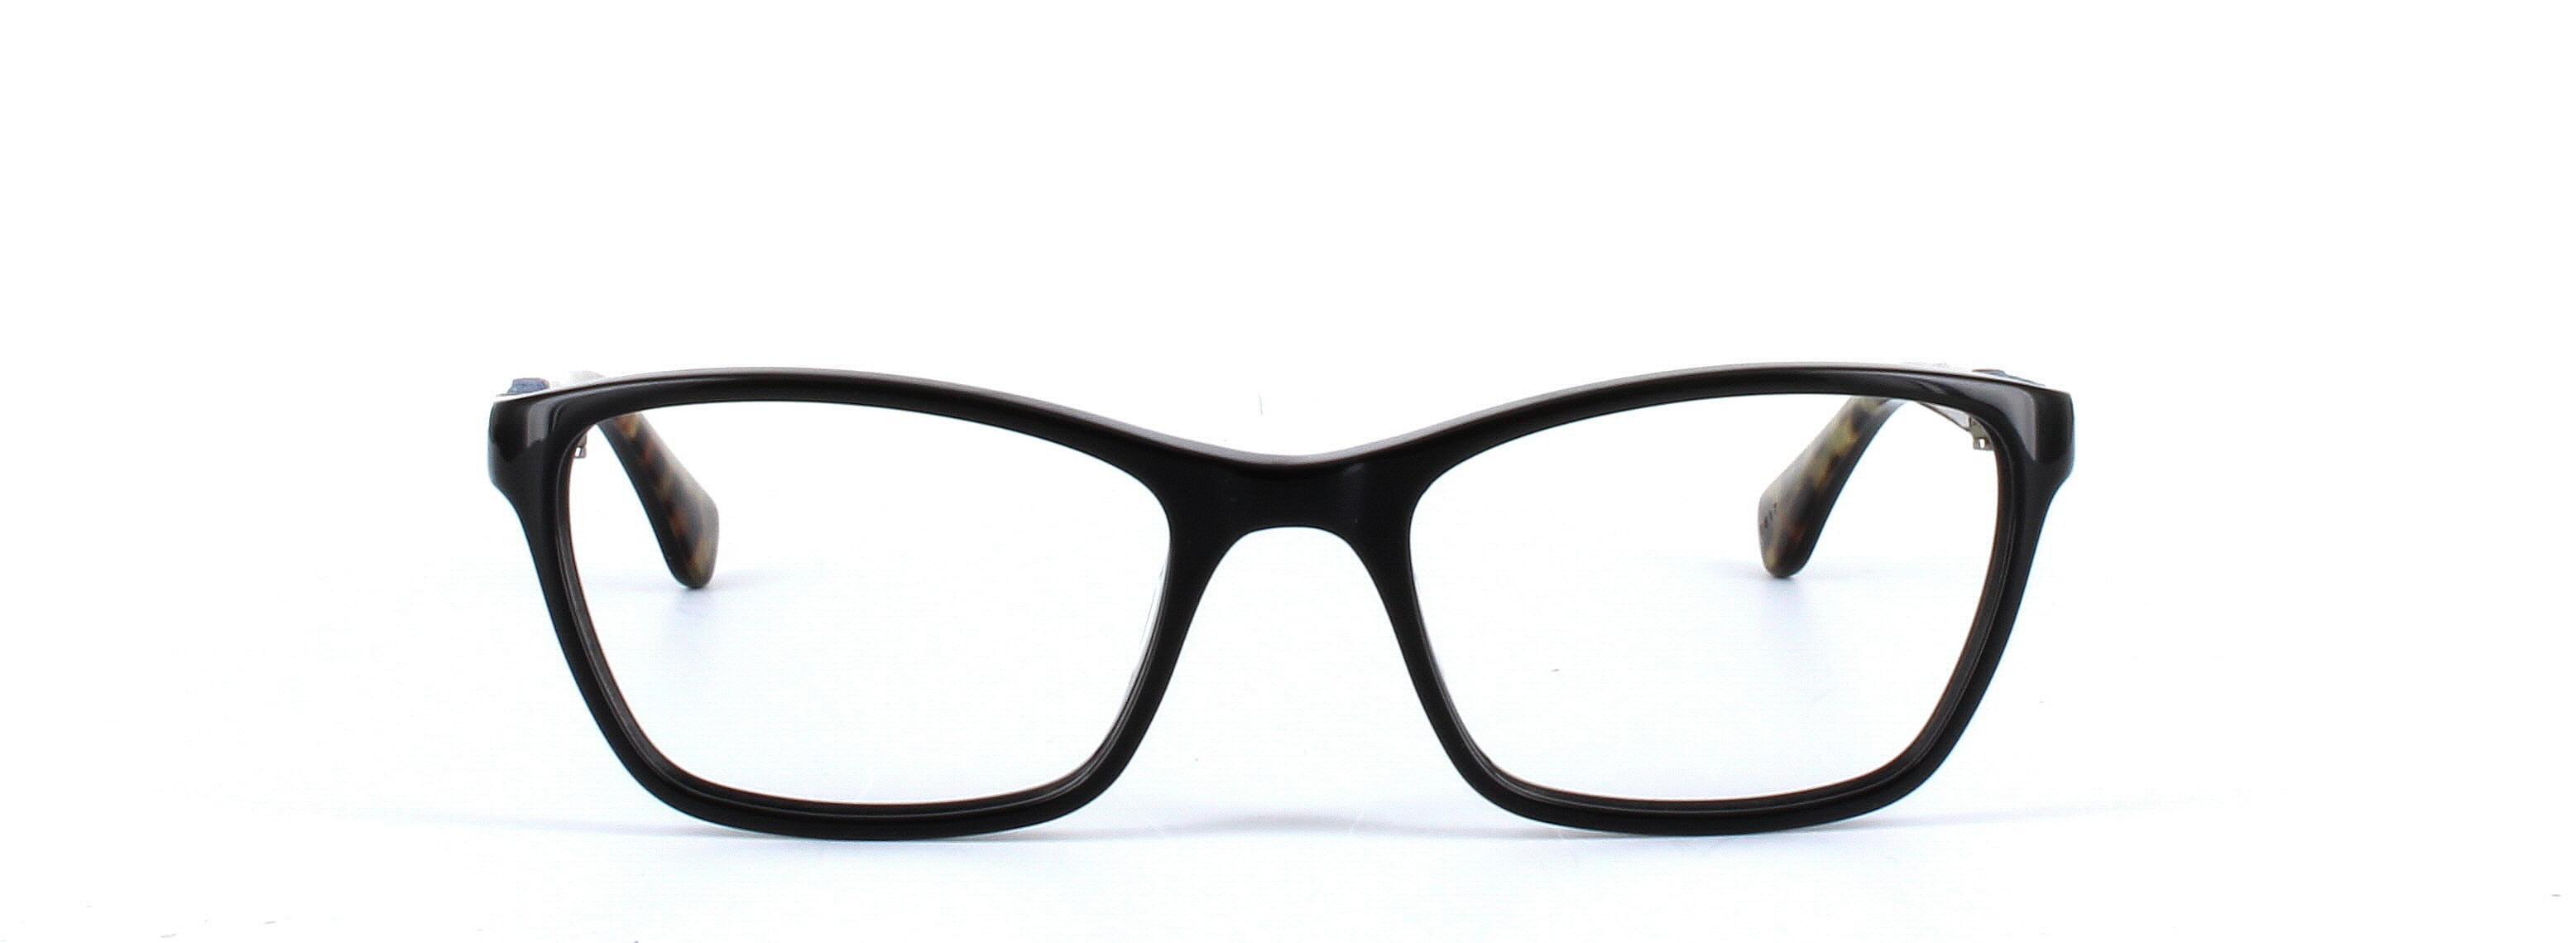 GUESS (GU2594-001) Black Full Rim Rectangular Acetate Glasses - Image View 5